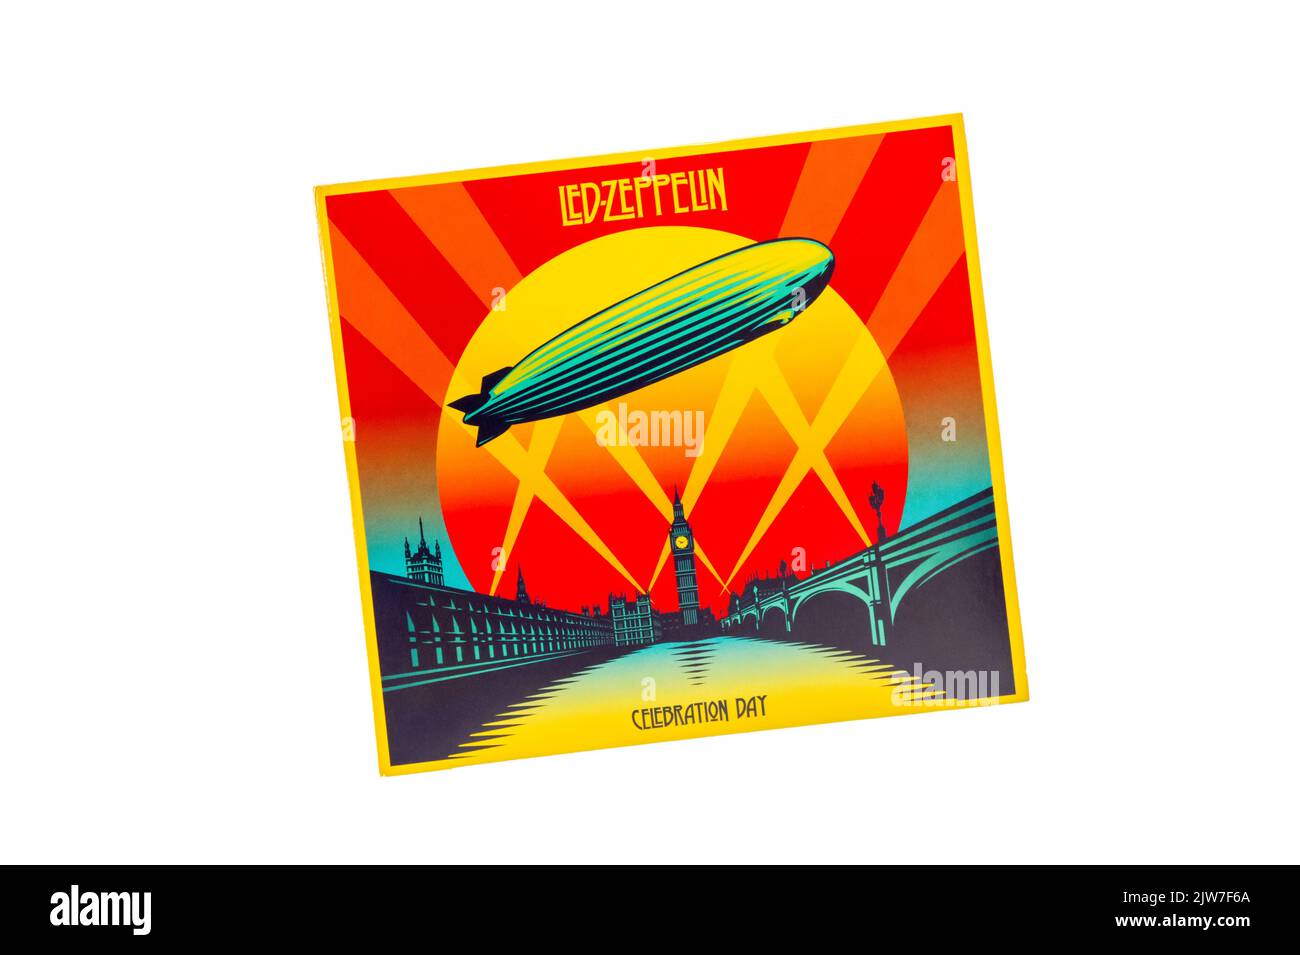 Celebration Day ist eine Live-Album-CD des LED Zeppelin-Konzerts in der Arena O2 im Jahr 2007. Stockfoto